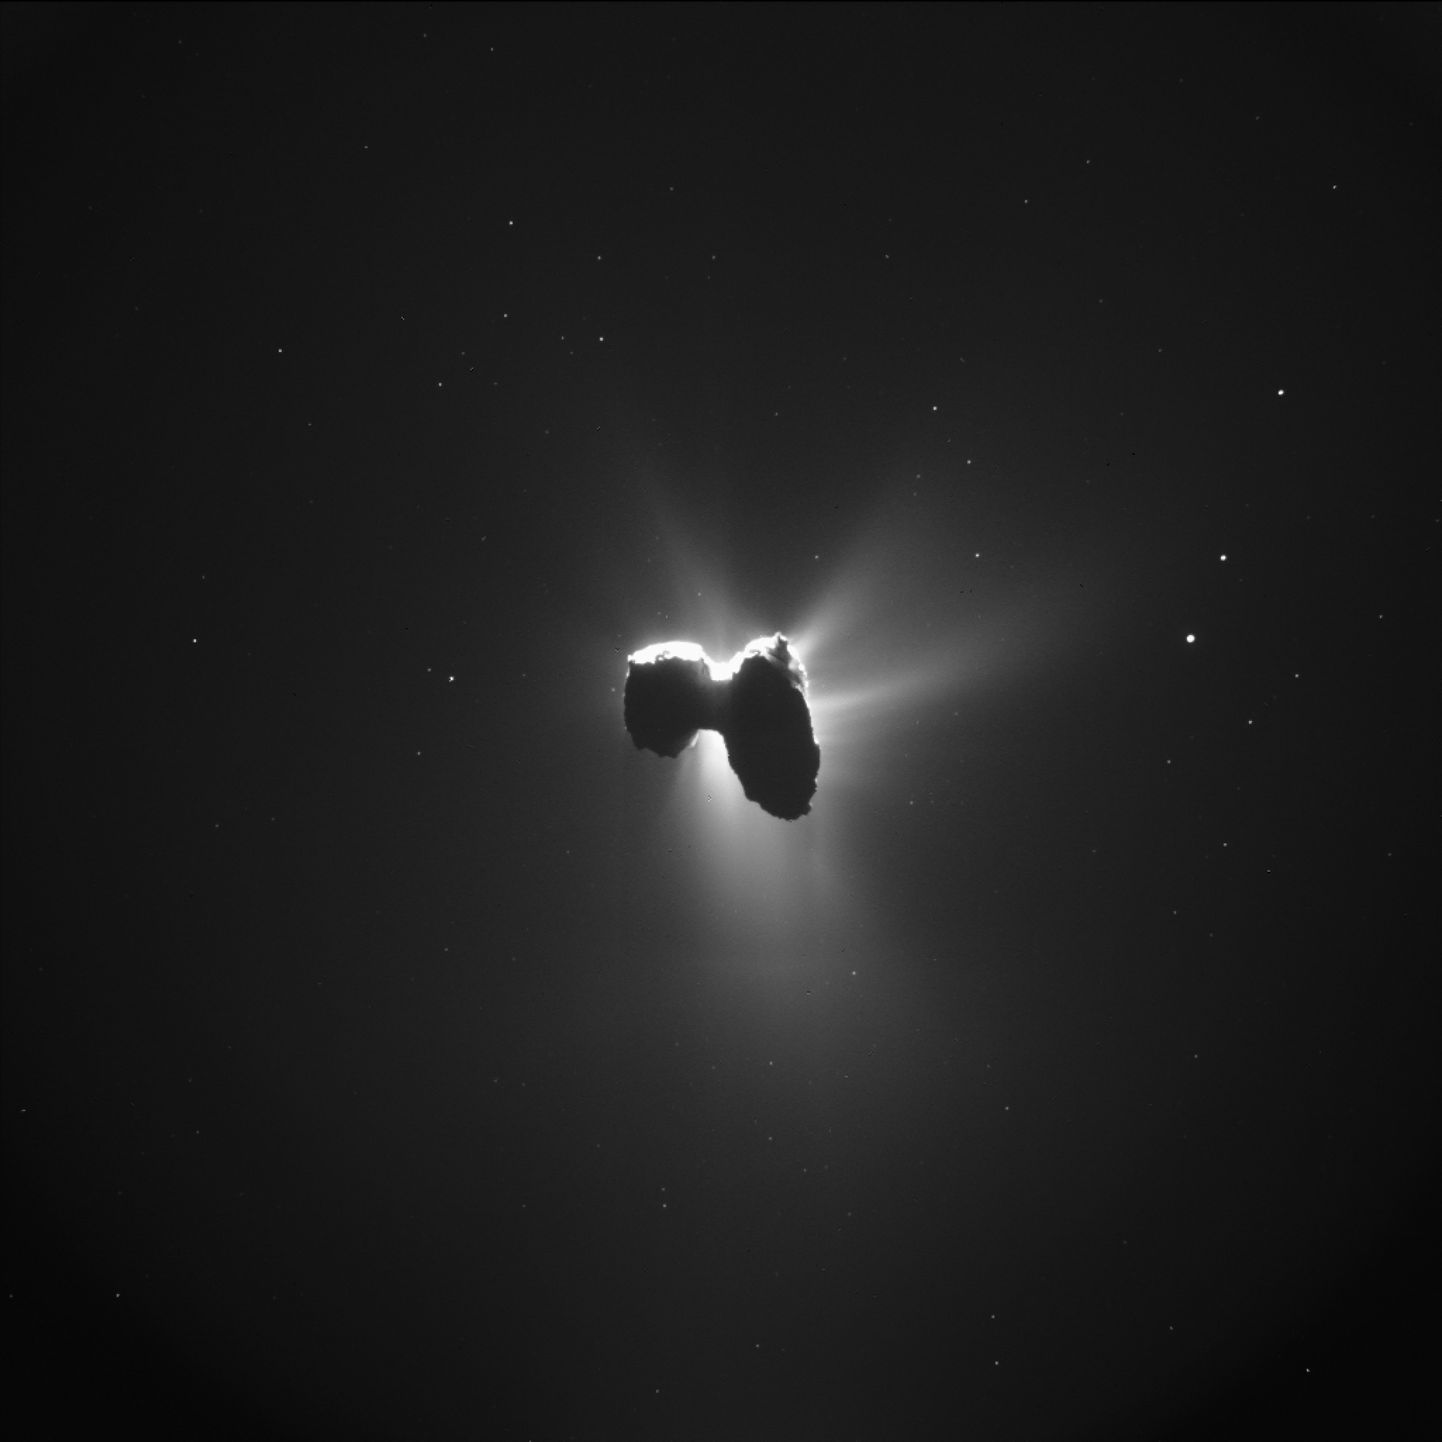 Rosetta uuritud 67p Tšurjumov-Gerassimenko. Pilt on illustreeriv.